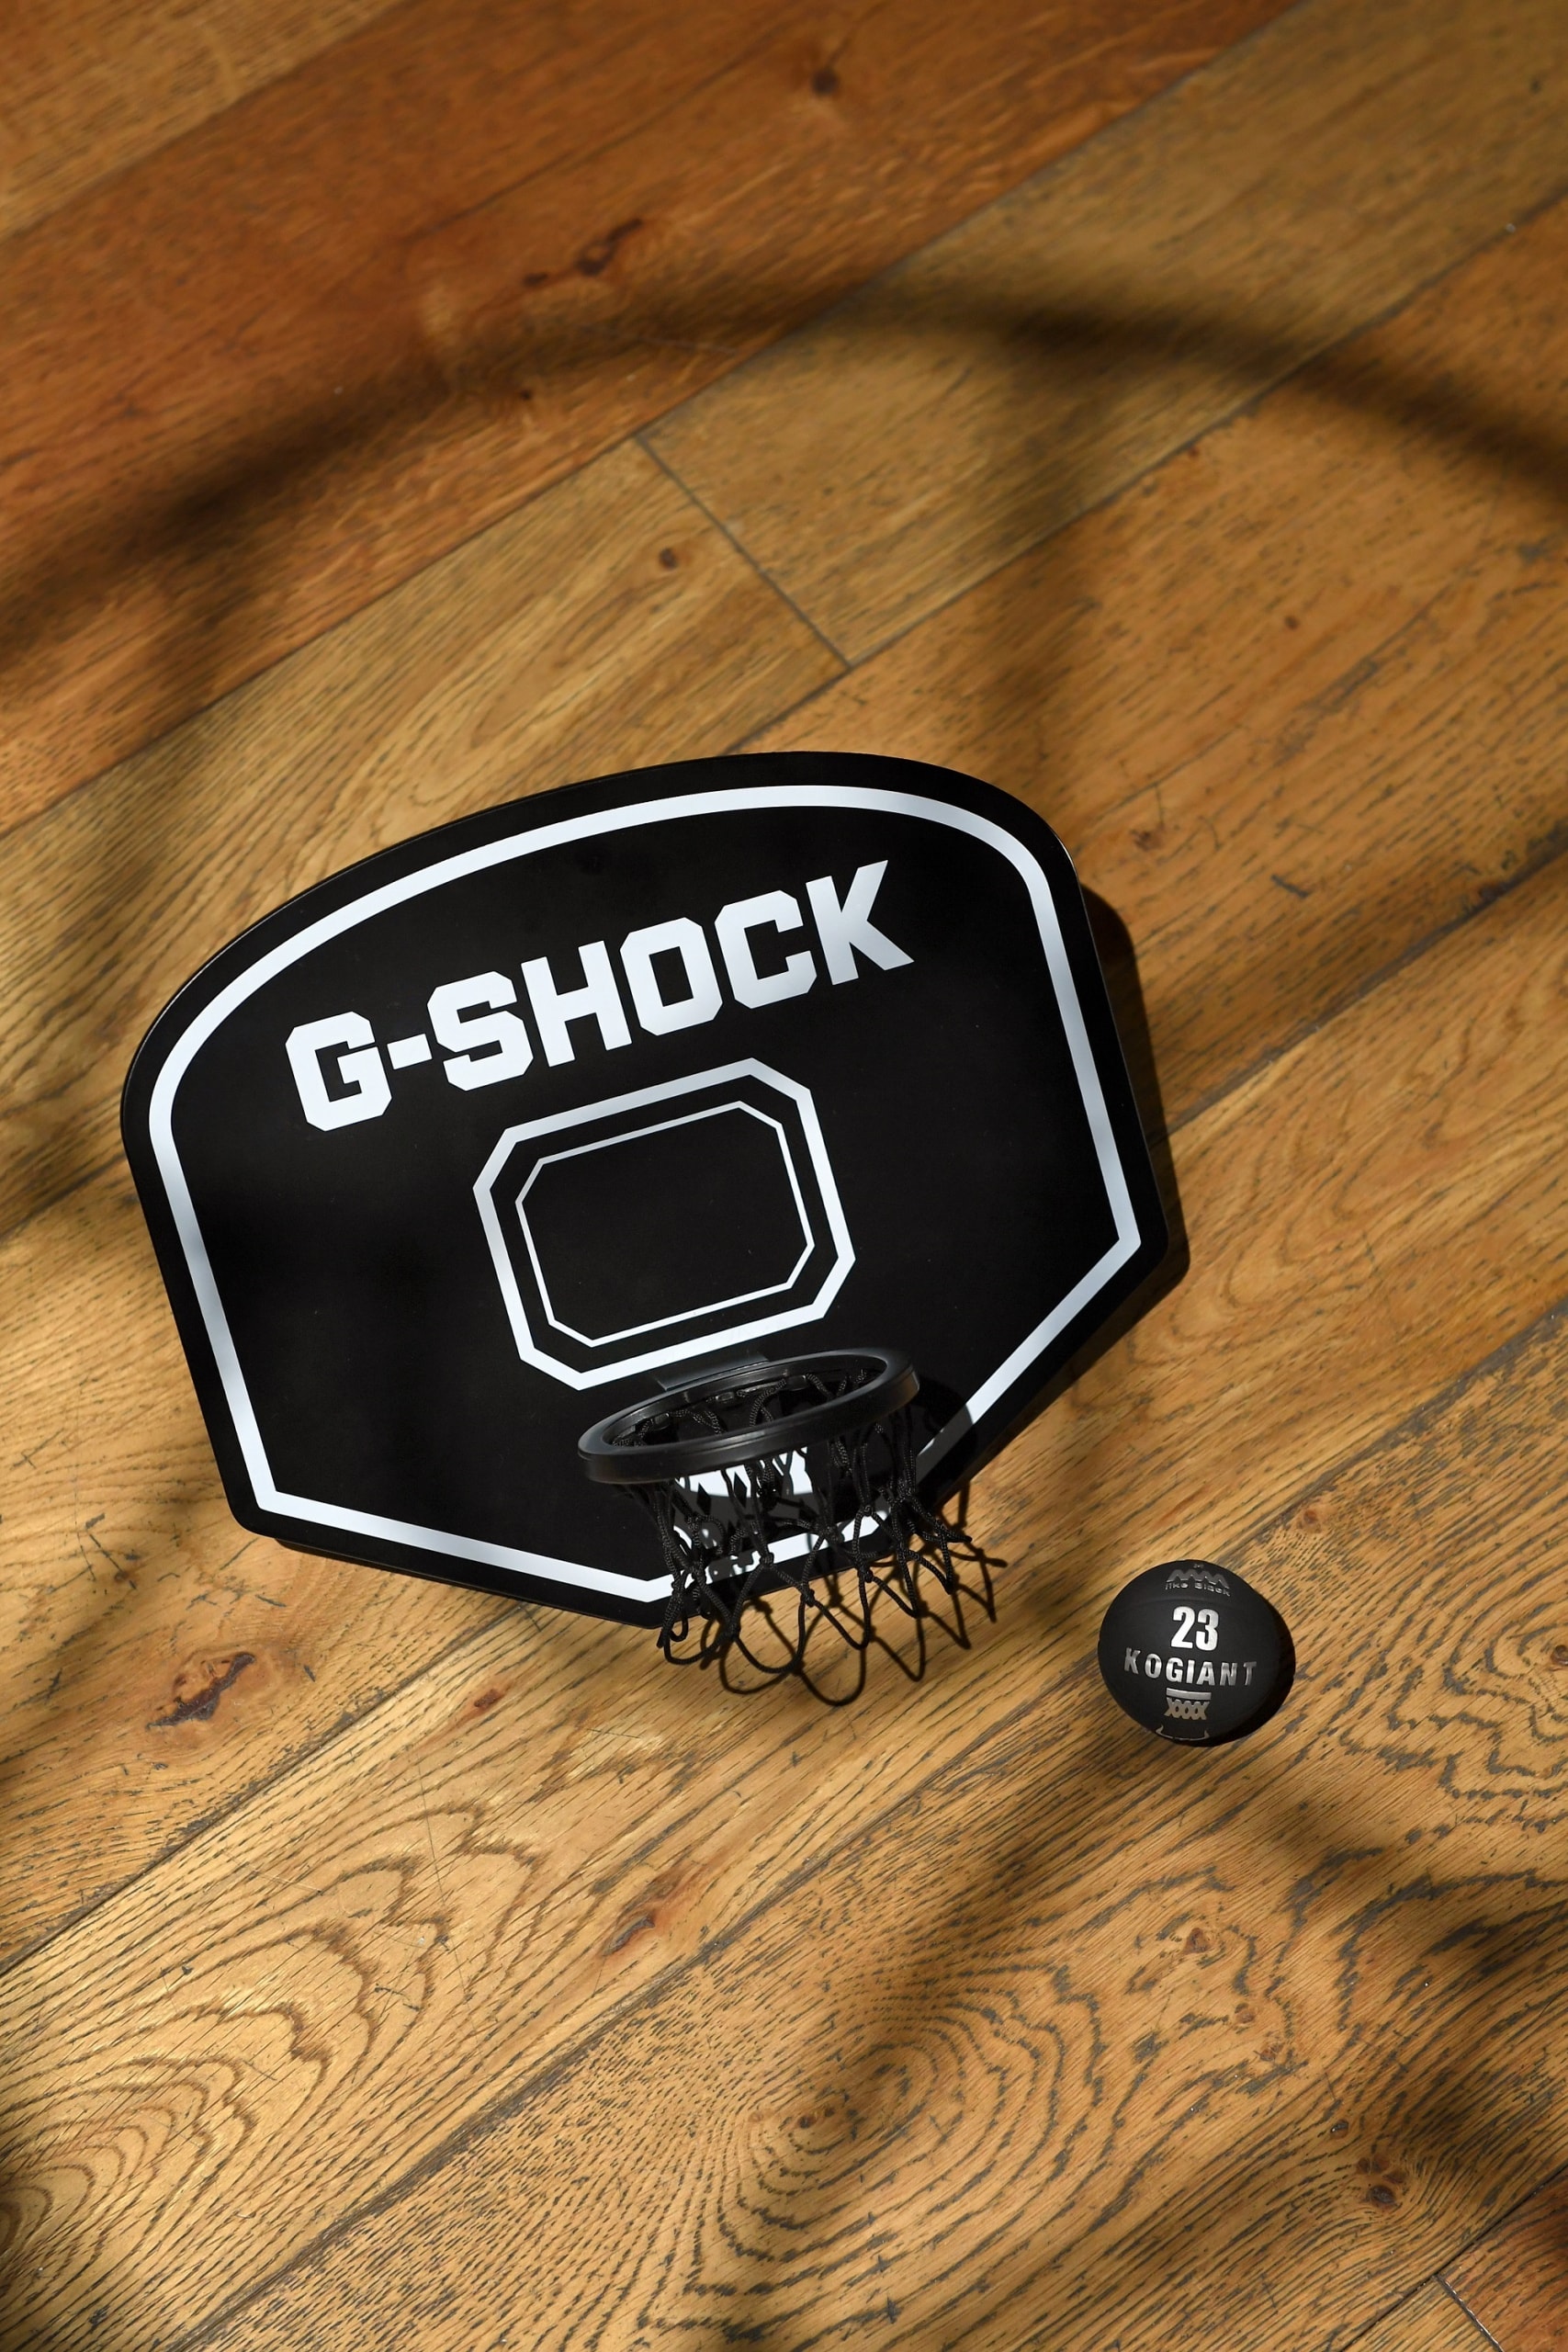 G-SHOCK 40 週年 x 葛民輝 4A like Black 企劃第二彈聯乘「HEROIC KOGIANT」 正式發售